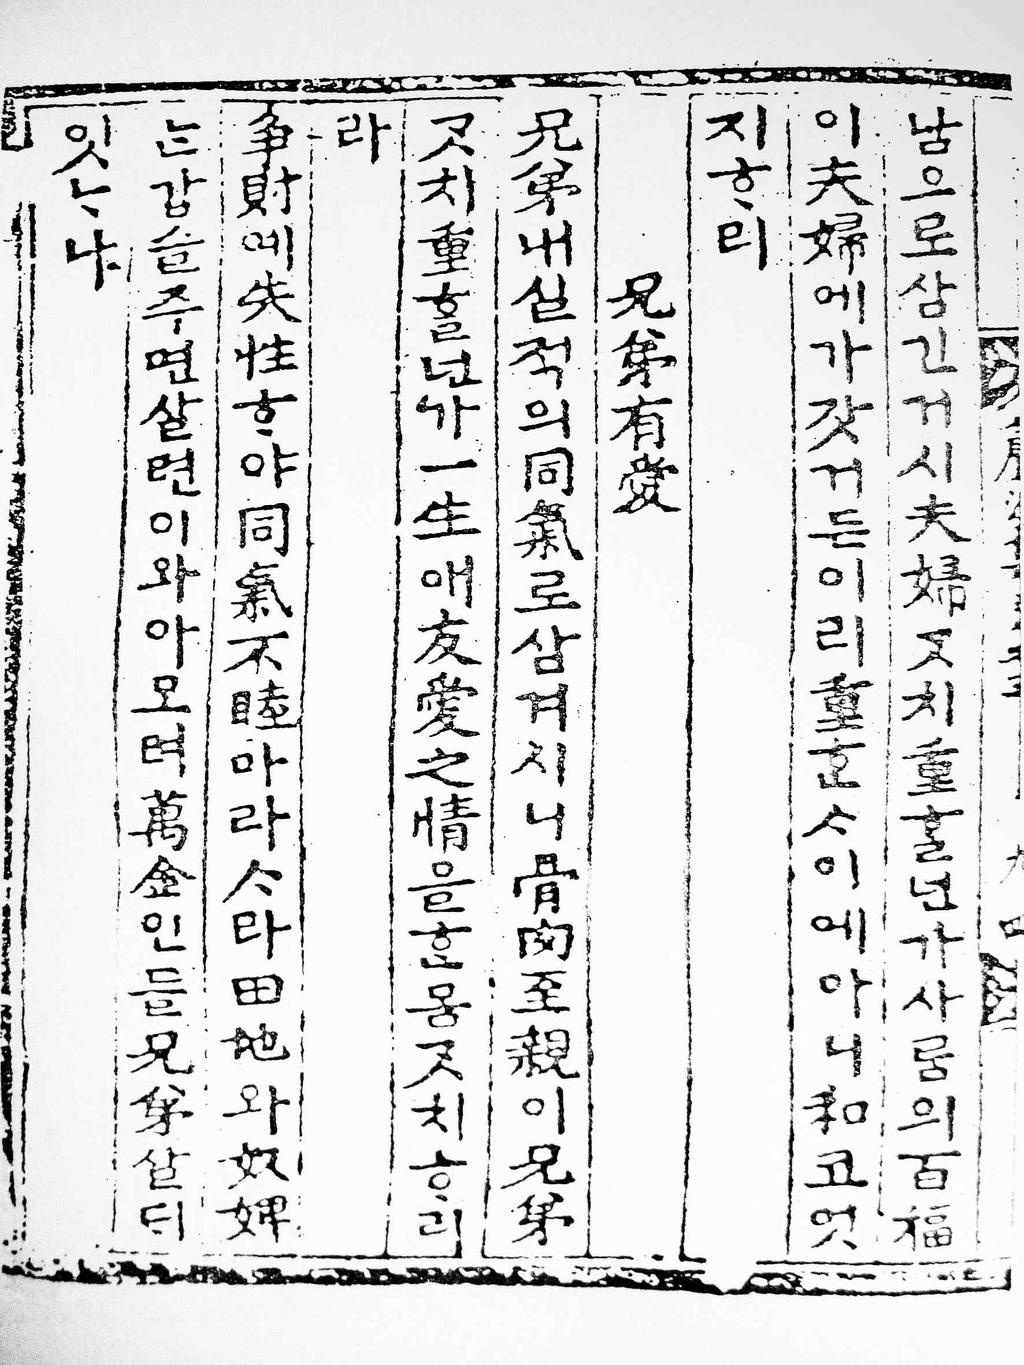 朝鮮時代國漢字混用資料 ( 抄錄 ) 335 五倫歌